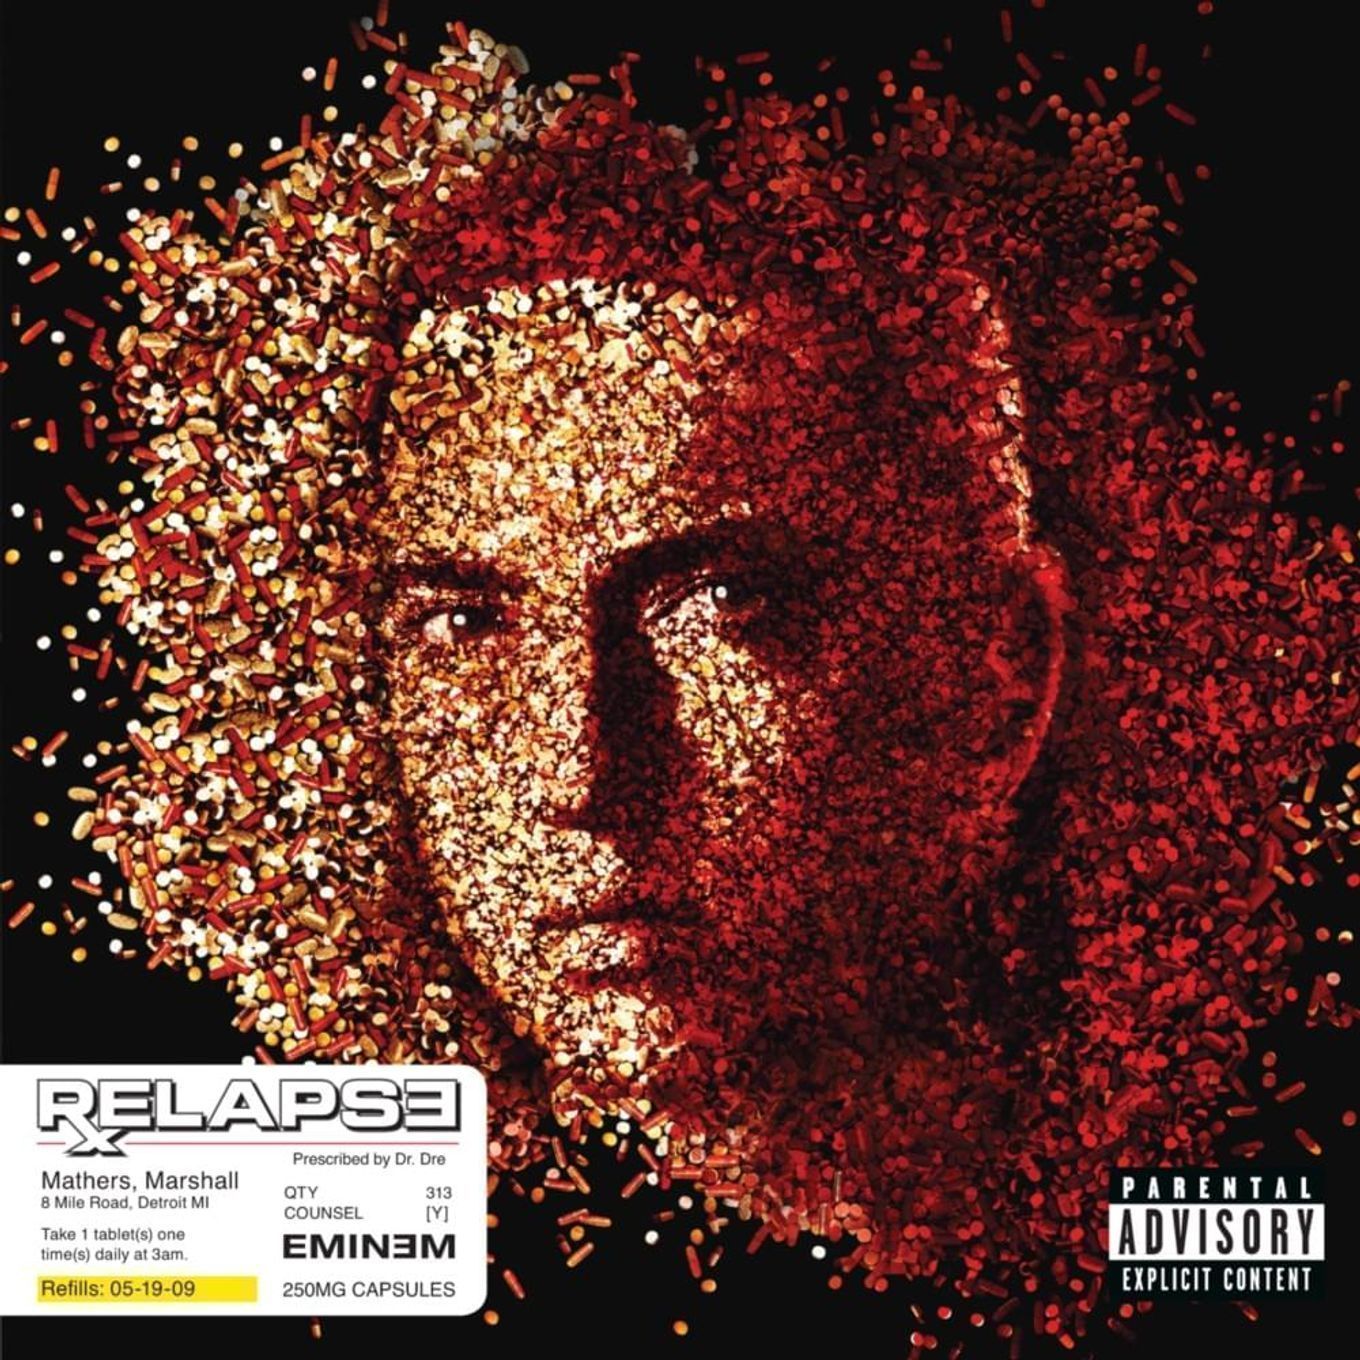 Album cover of "Eminem - Relapse"